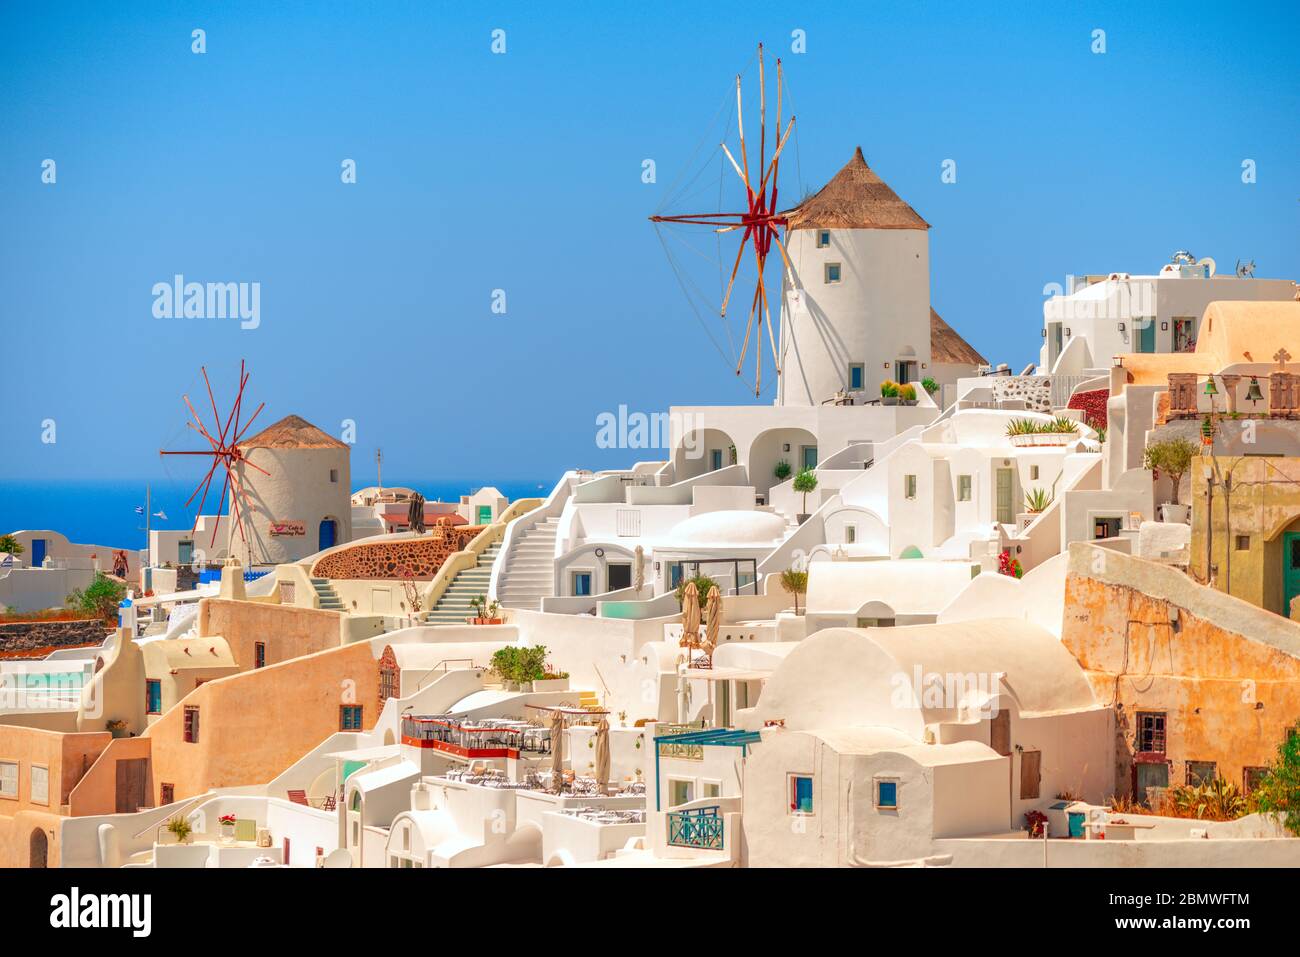 Questi mulini a vento sono un simbolo iconico di Santorini, un'isola greca e si trovano nel pittoresco villaggio di Oia. Foto Stock